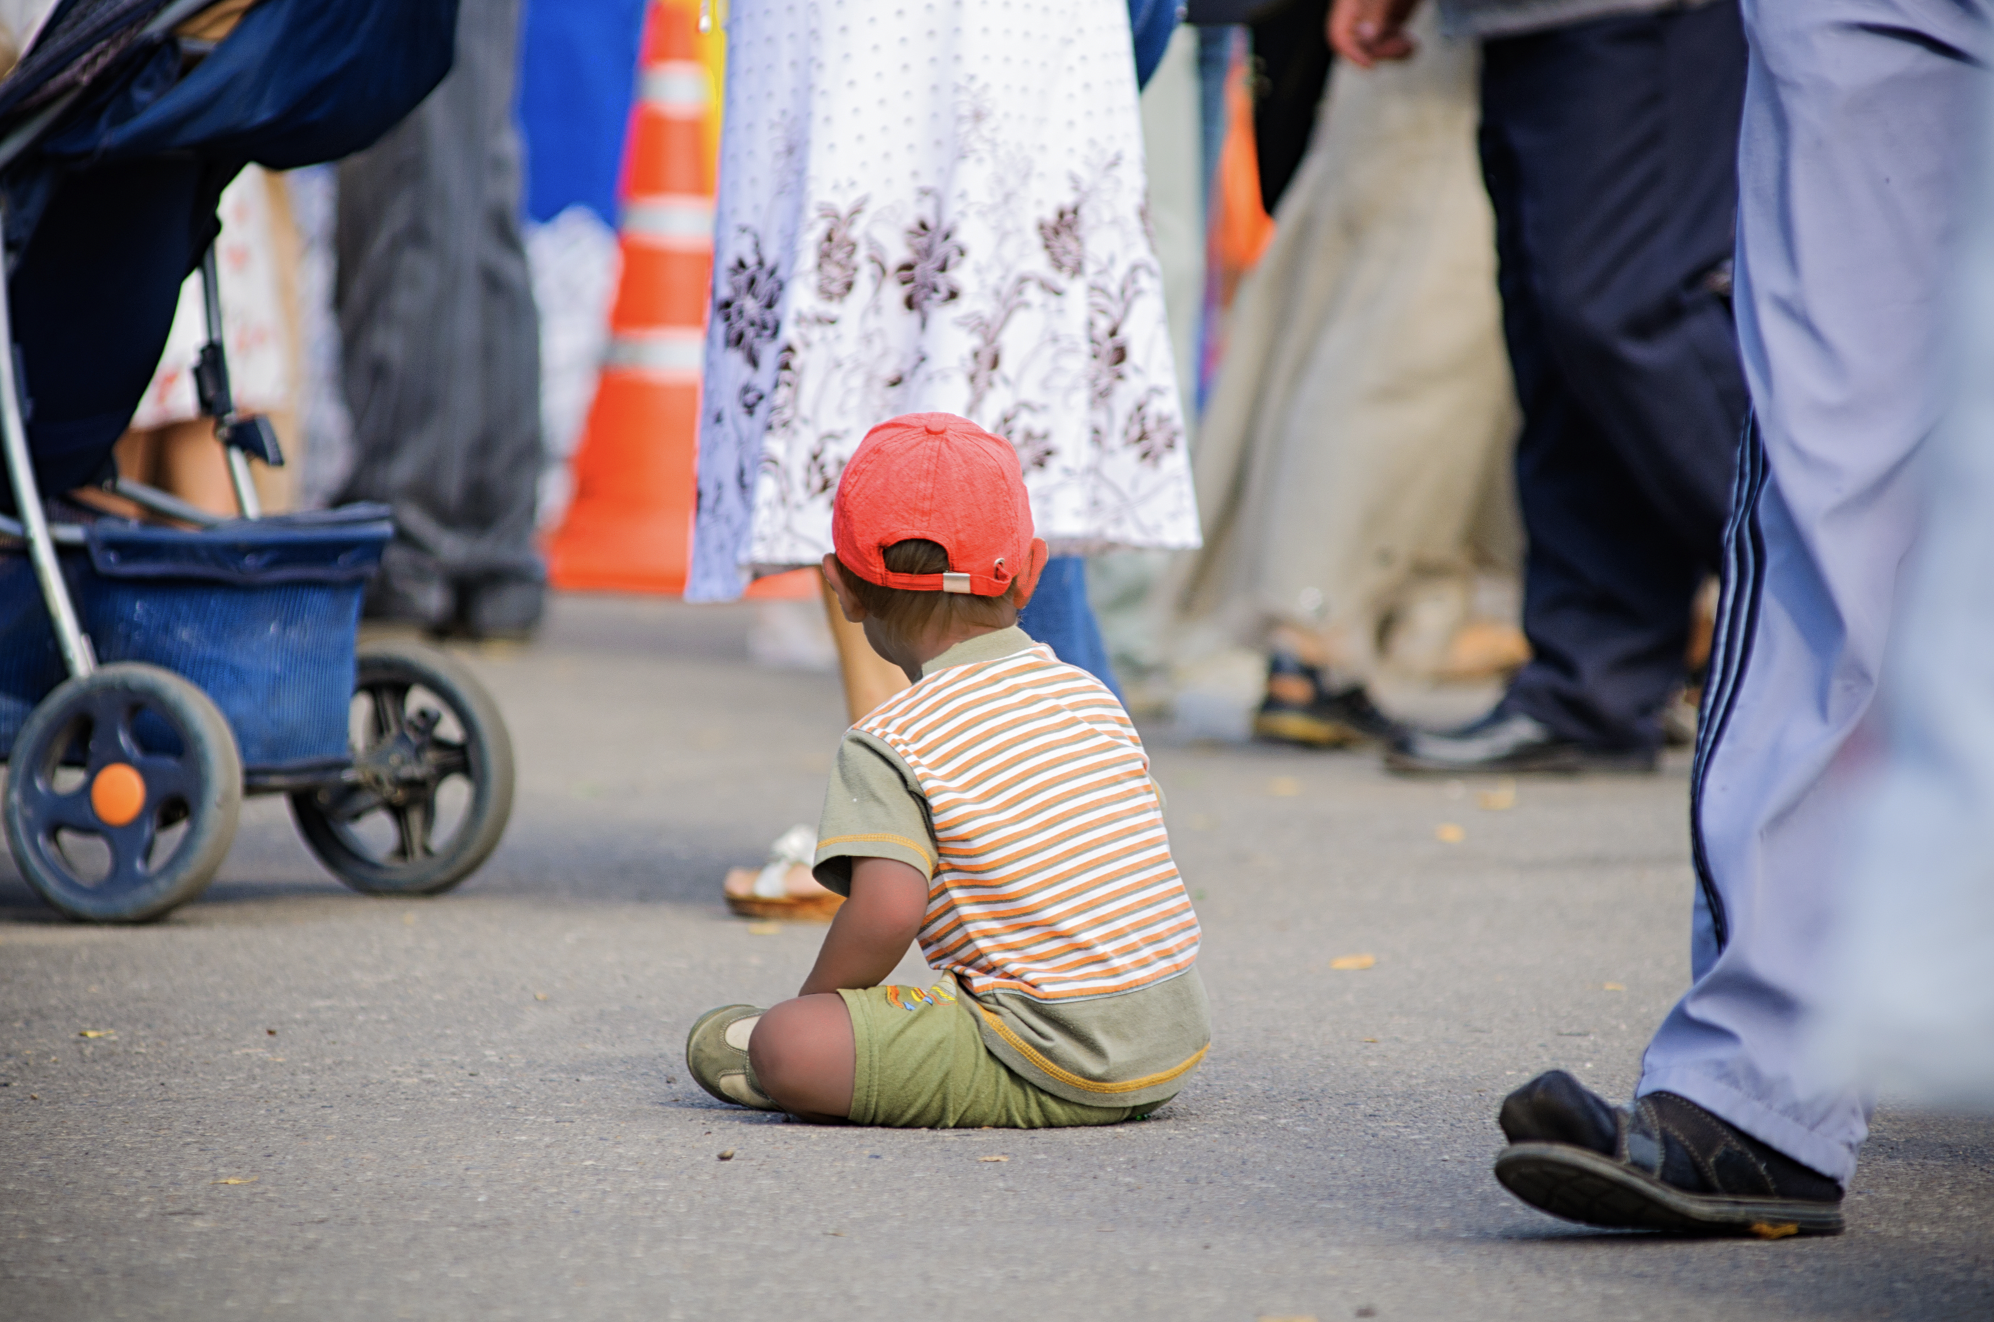 Lost little boy sitting on the street | Source: Shutterstock